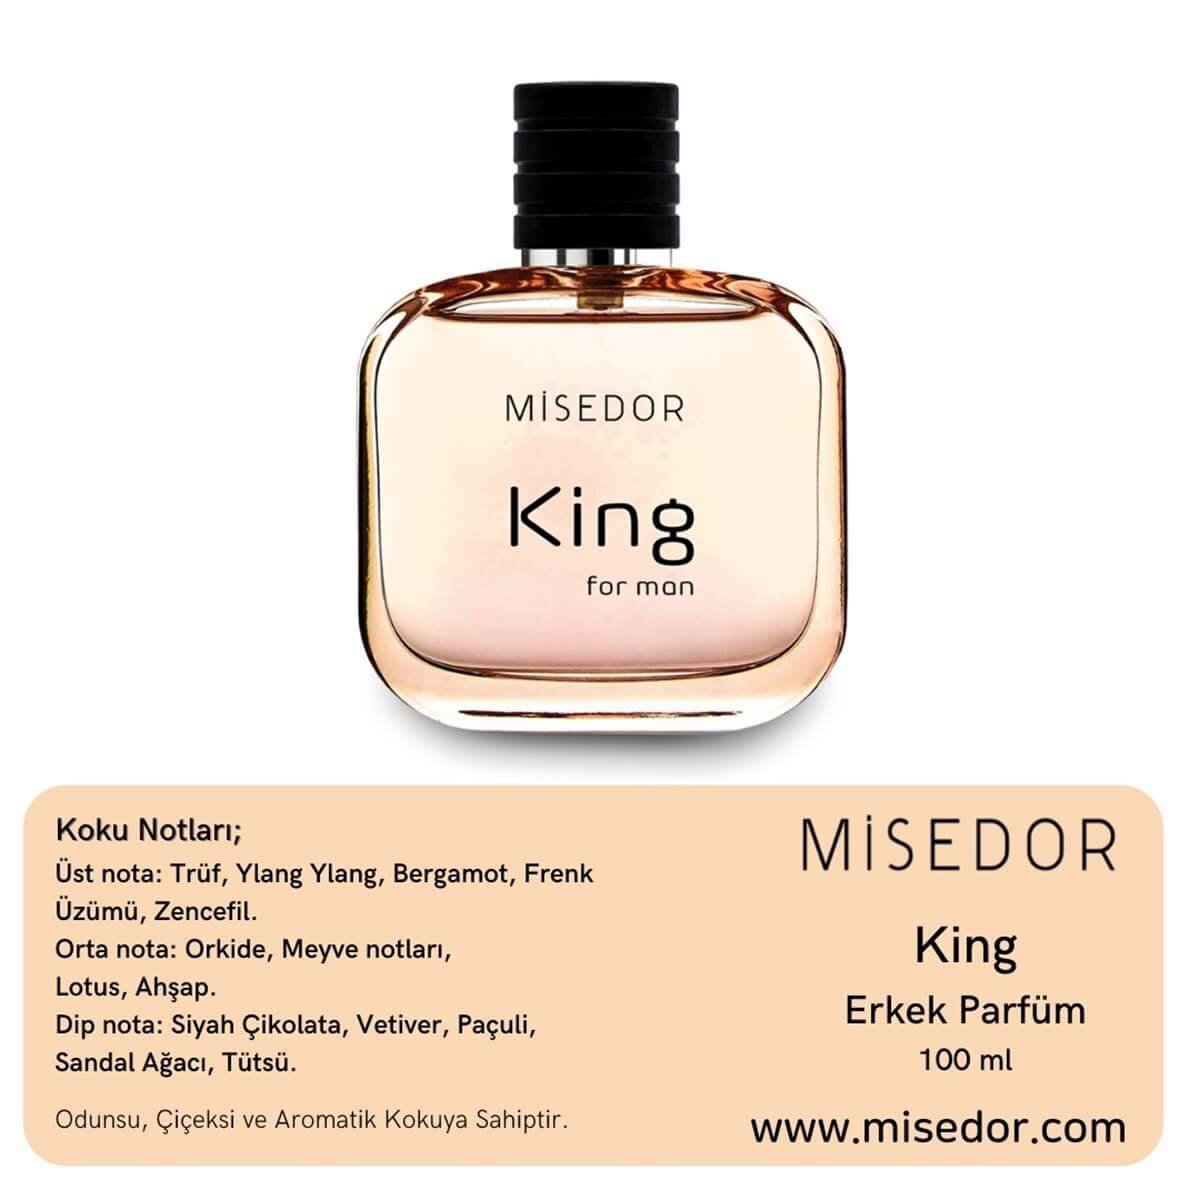 Misedor King Edp 100 ml Erkek Parfüm | Misedor